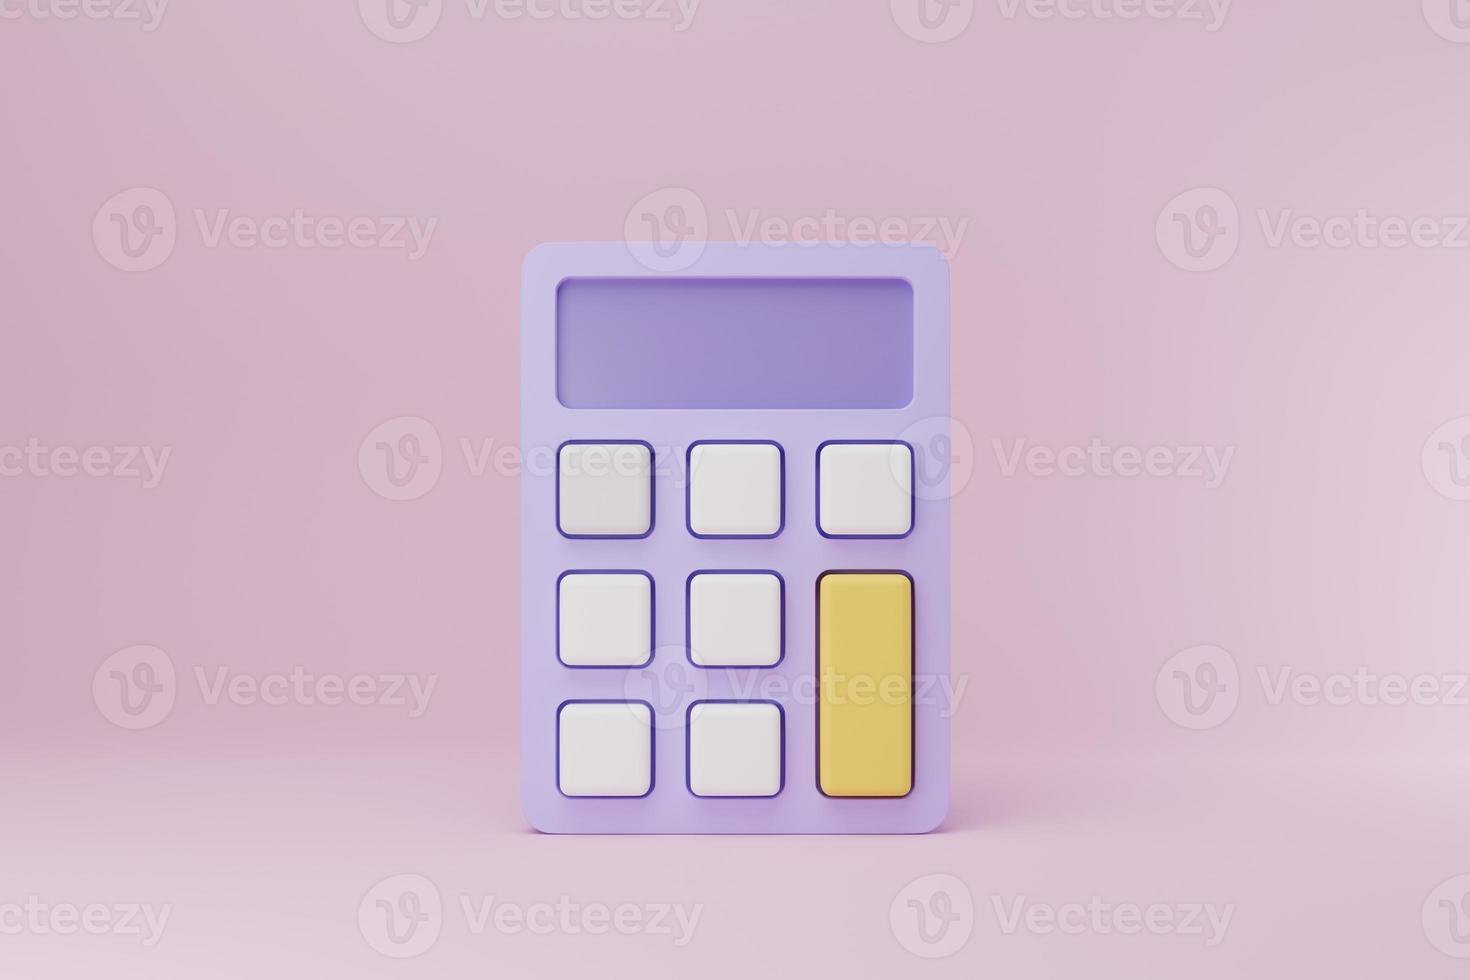 Icône de calculatrice minimale de dessin animé illustration de rendu 3d, concept de gestion financière, calculatrice pour la finance comptable photo